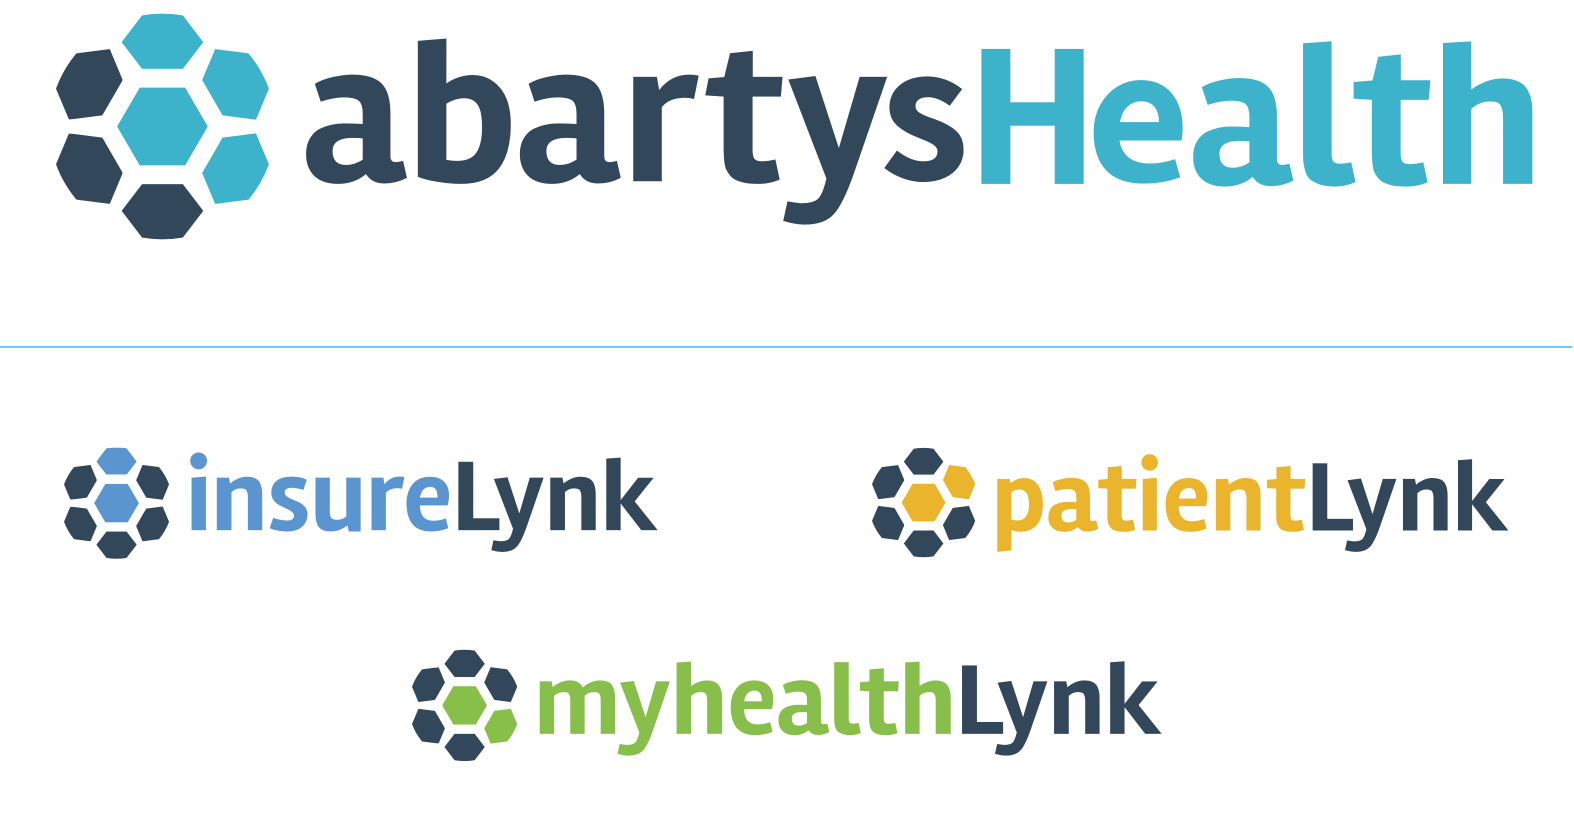 Abartys Health, ha buscado generar soluciones a la pandemia con el fin de eliminar las brechas en el gremio de la salud, mediante PatientLynk 2.0.